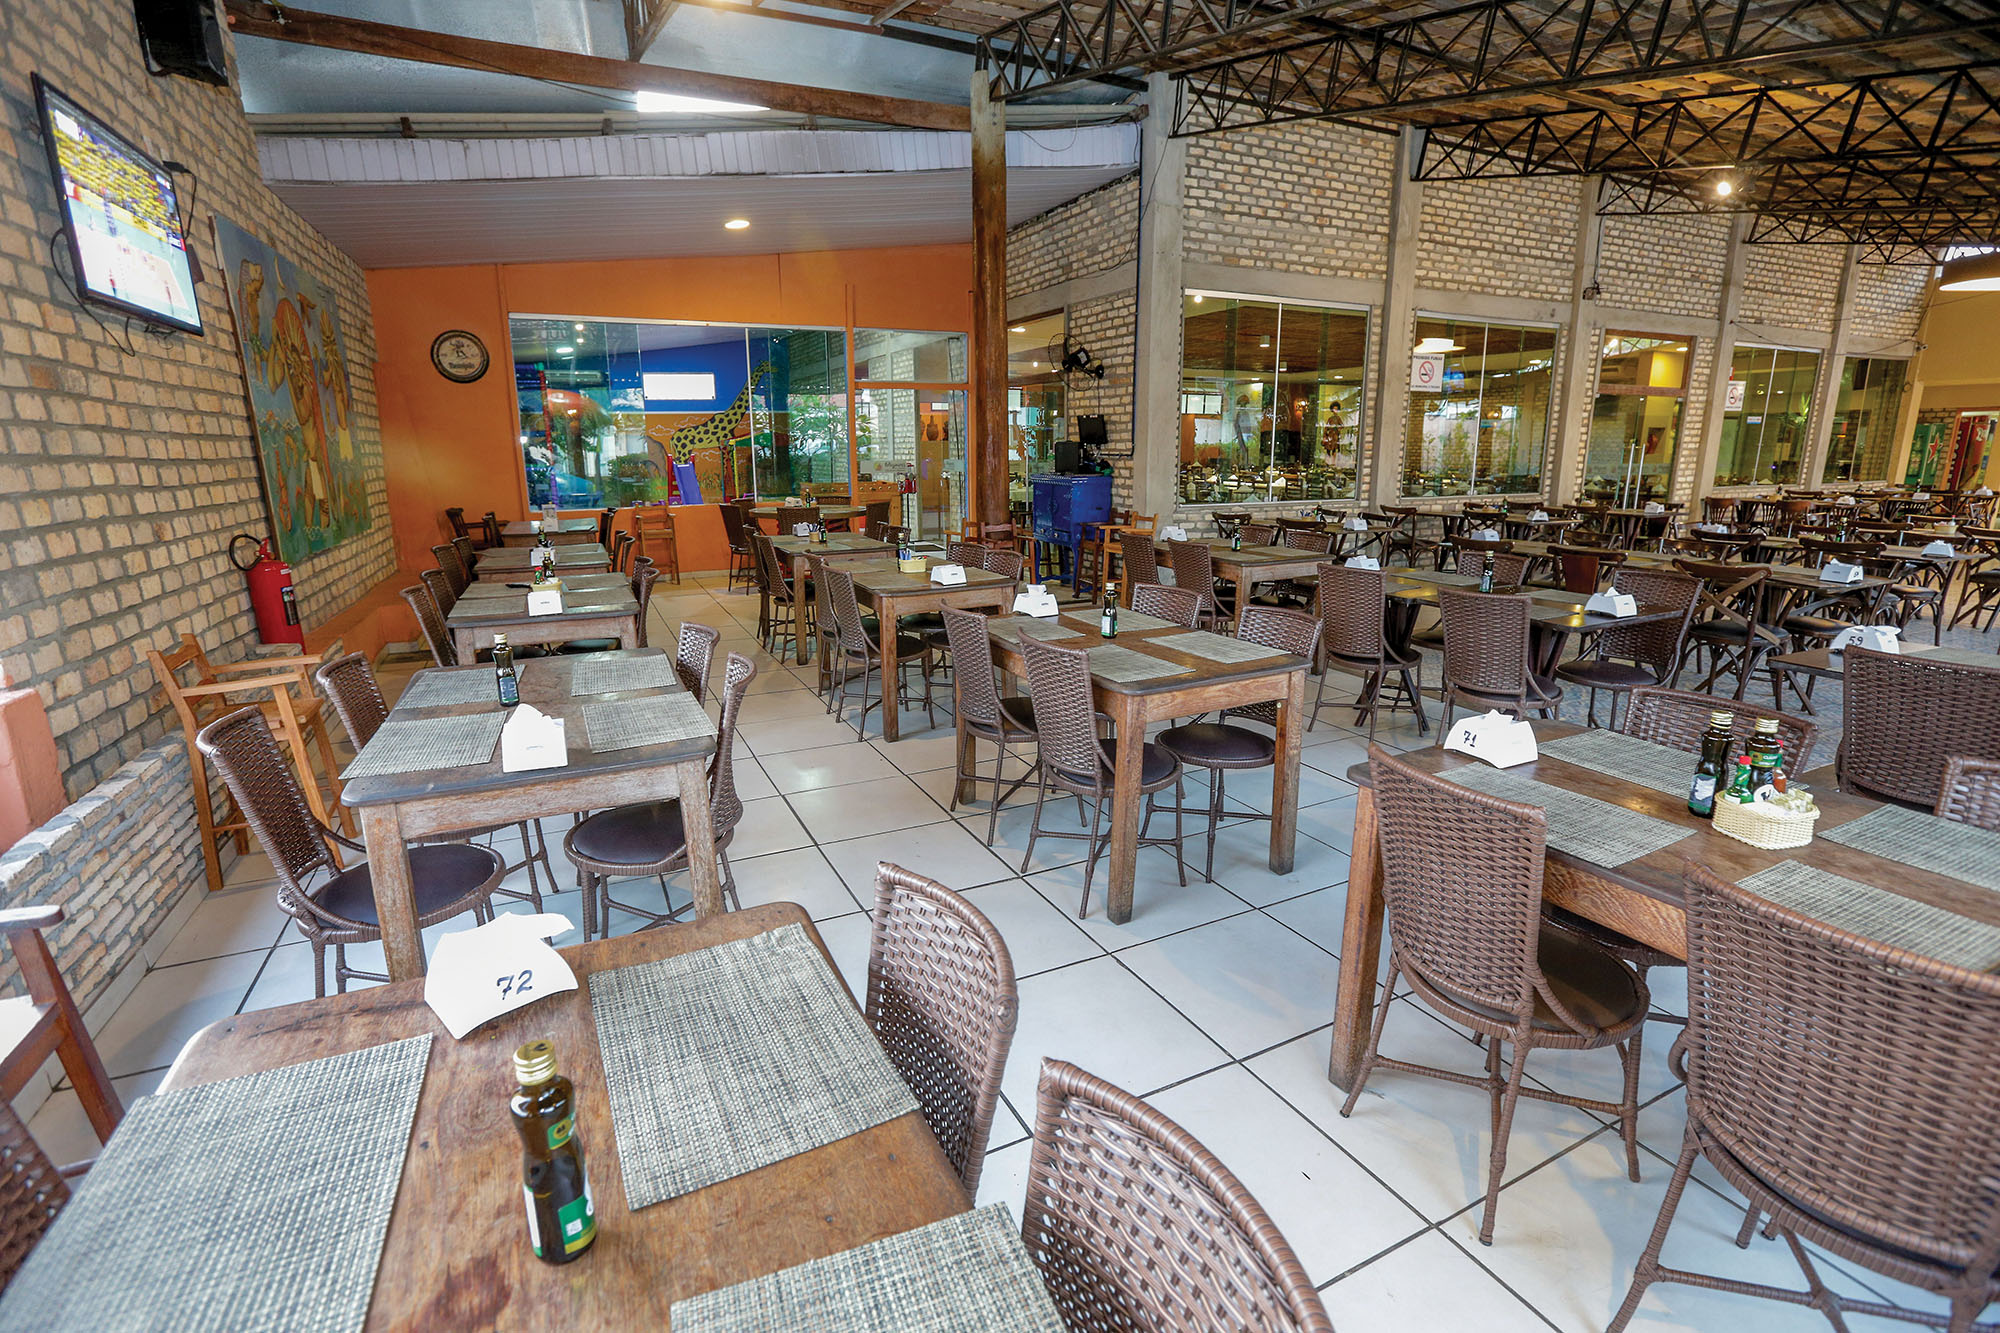 Restaurante Potiguares comemora cinco anos